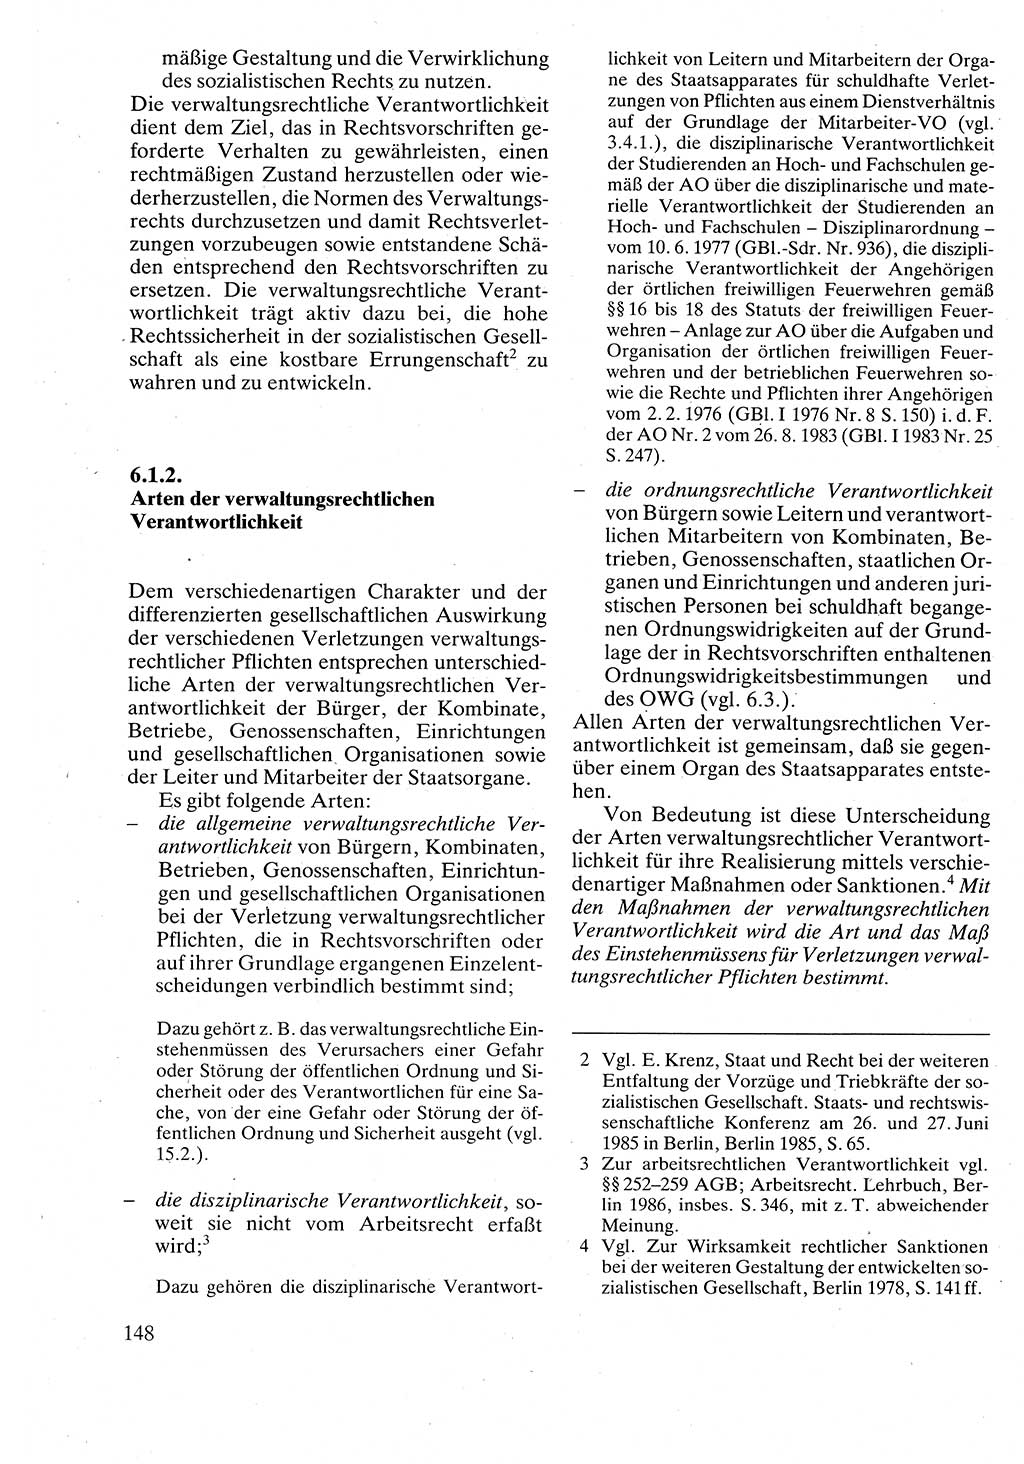 Verwaltungsrecht [Deutsche Demokratische Republik (DDR)], Lehrbuch 1988, Seite 148 (Verw.-R. DDR Lb. 1988, S. 148)